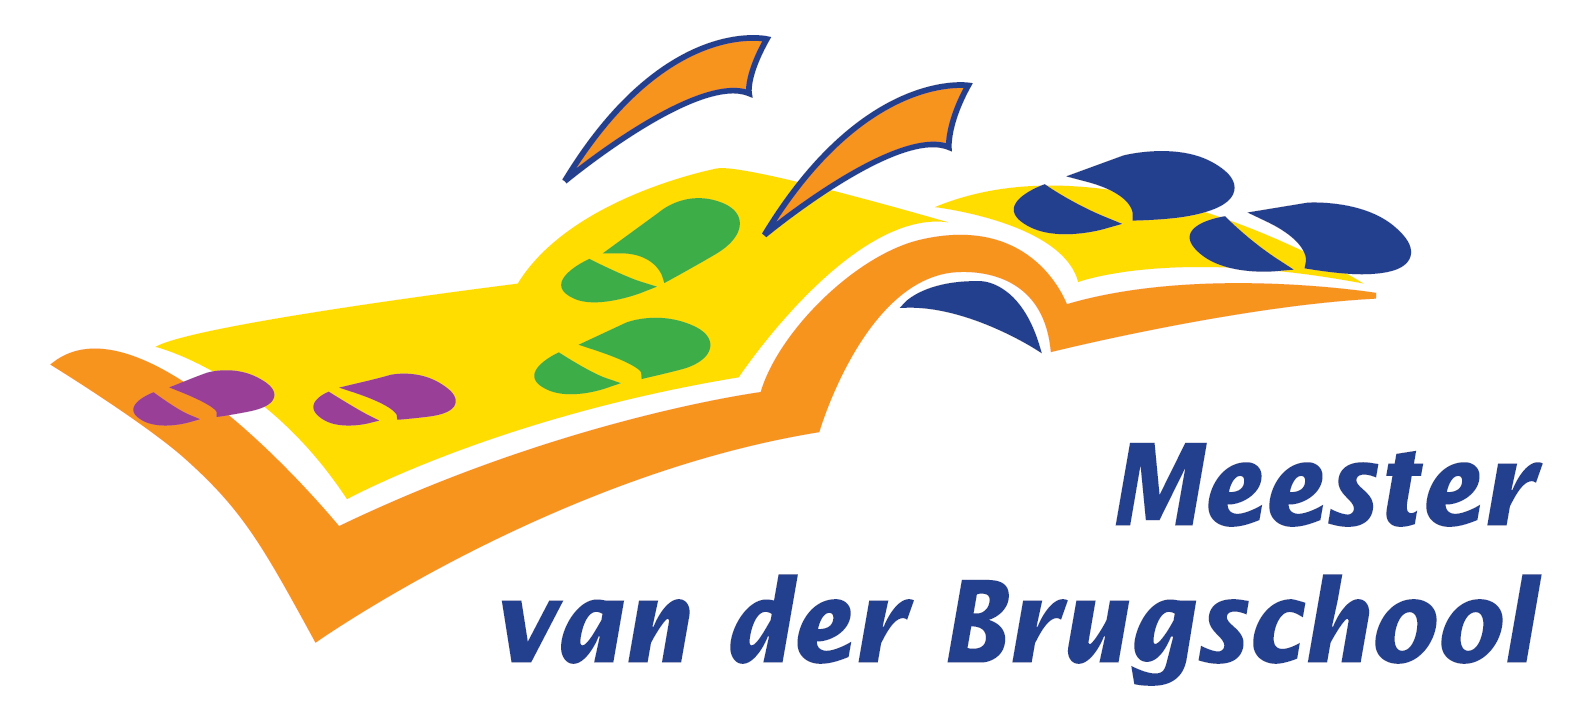 Meester van der Brugschool logo